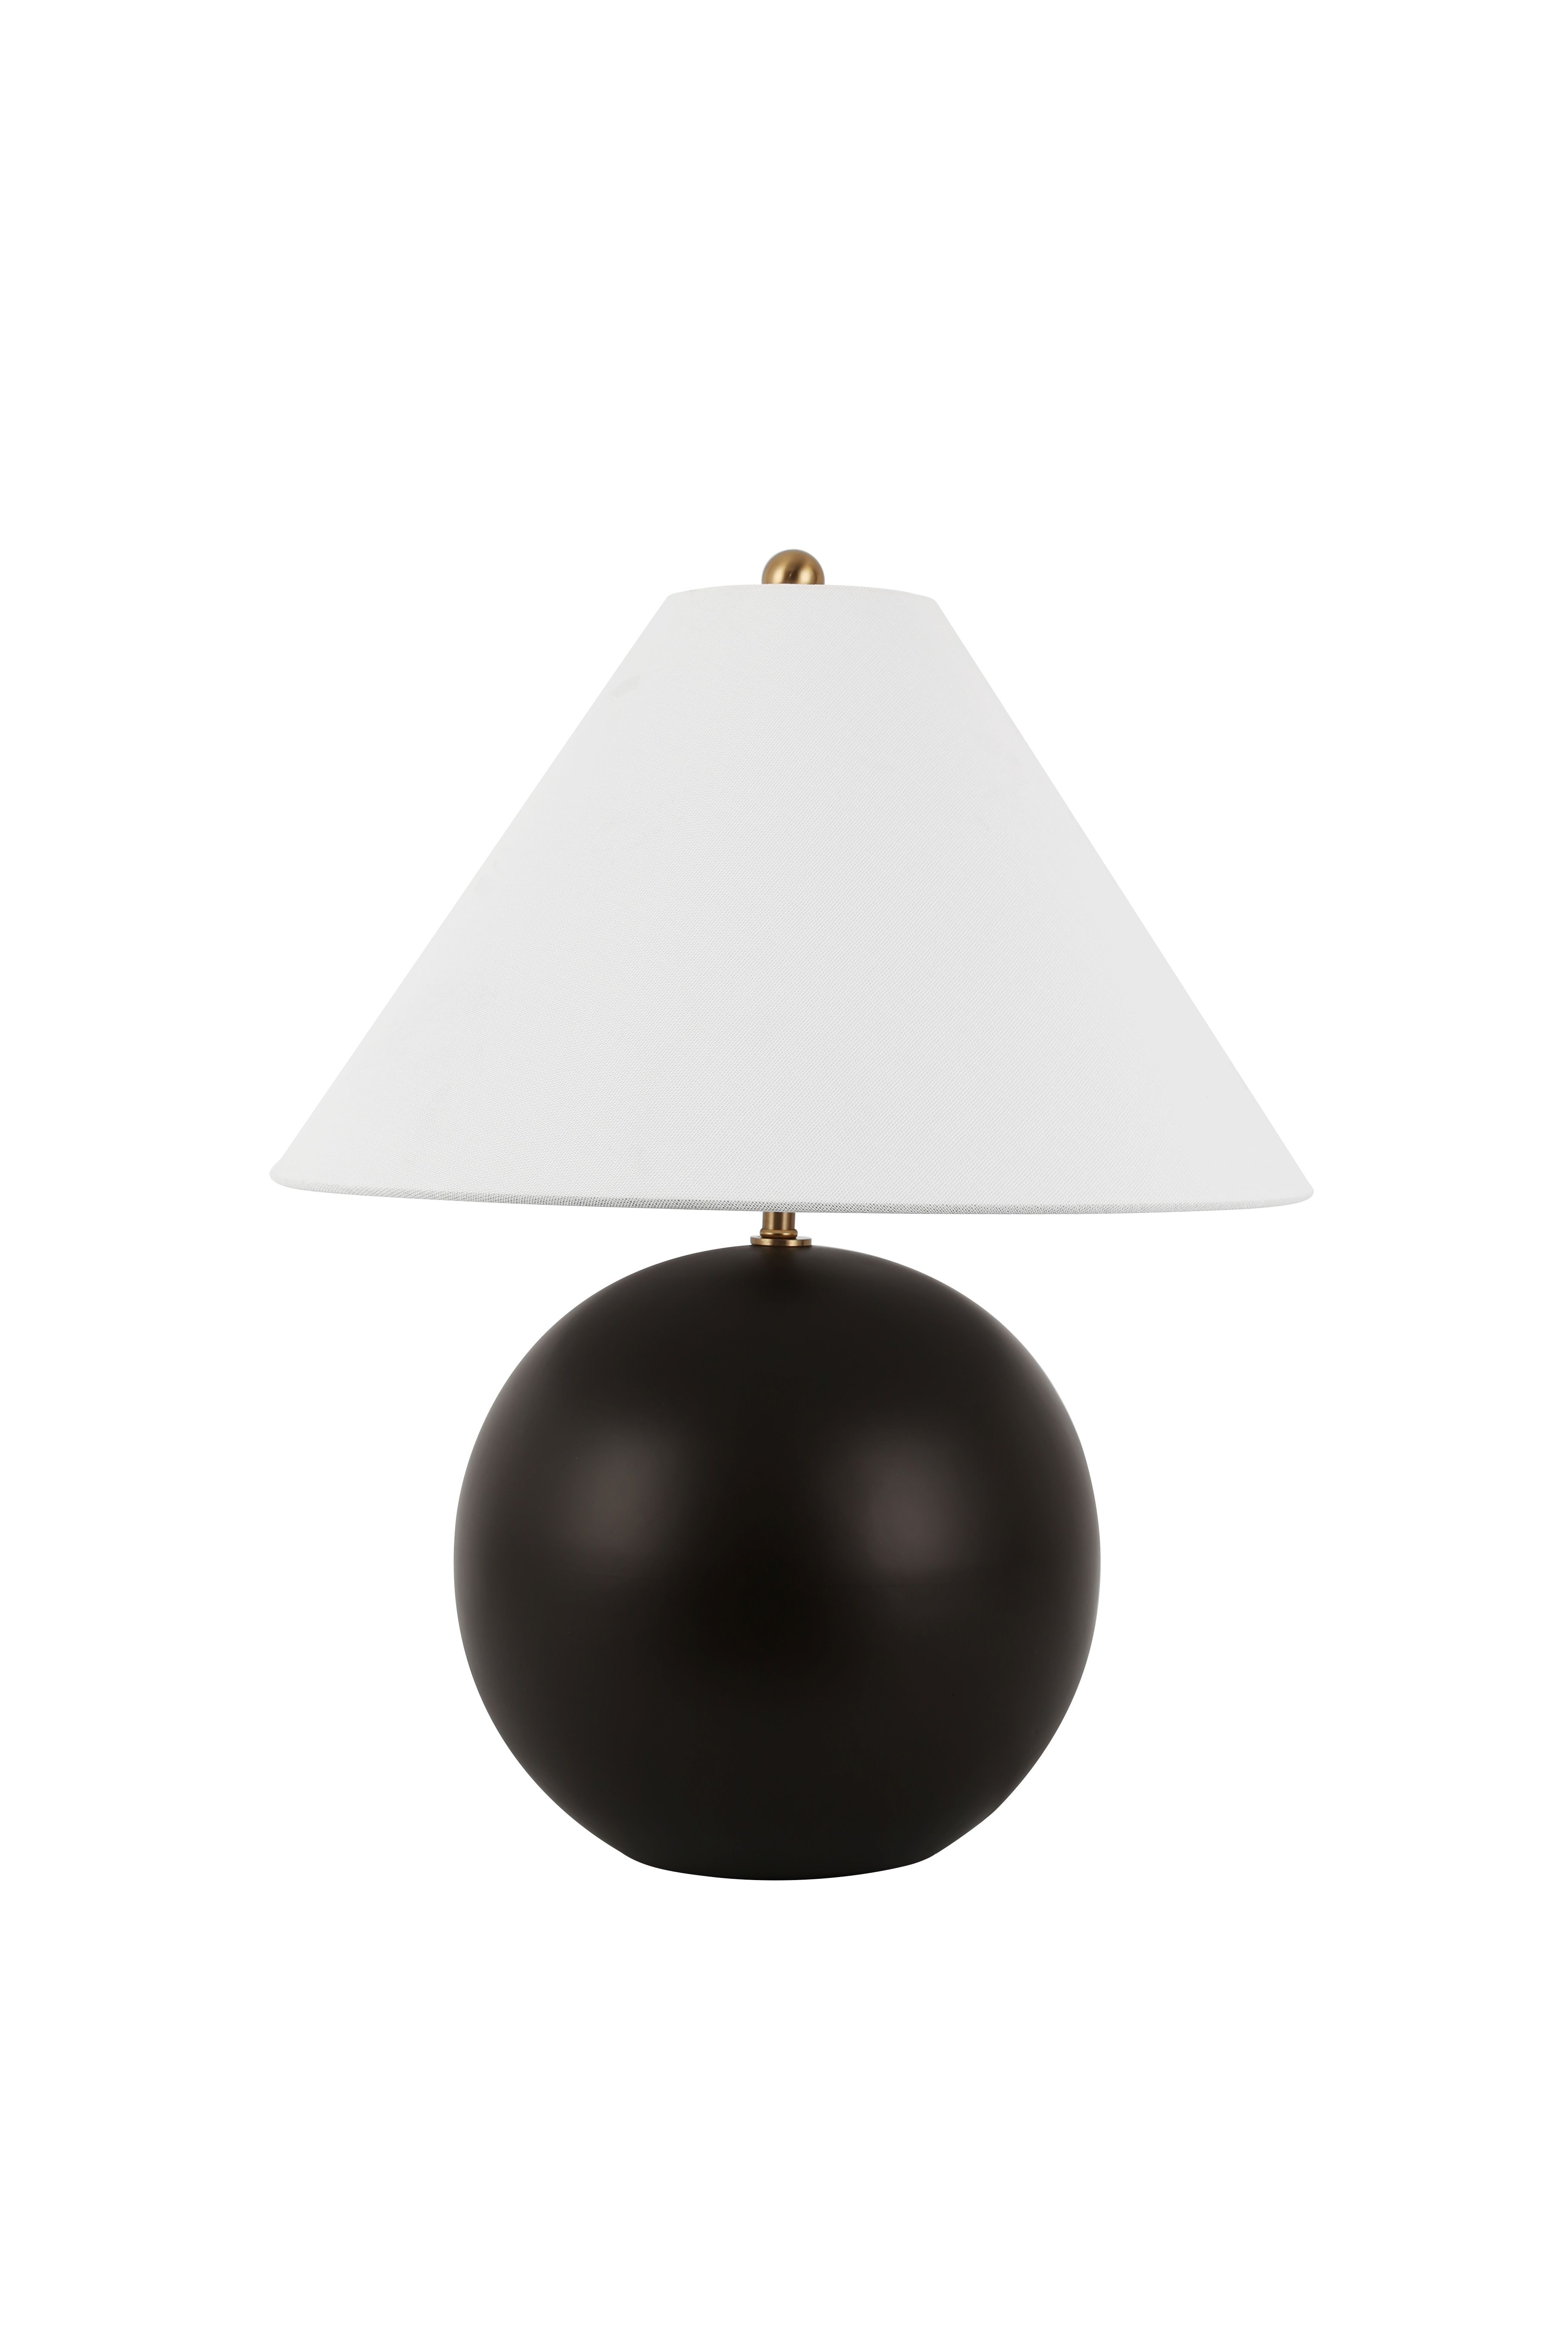 Exquisite sphere matte black matte white Nordic style hotel room desk lamp desk office custom table lamp